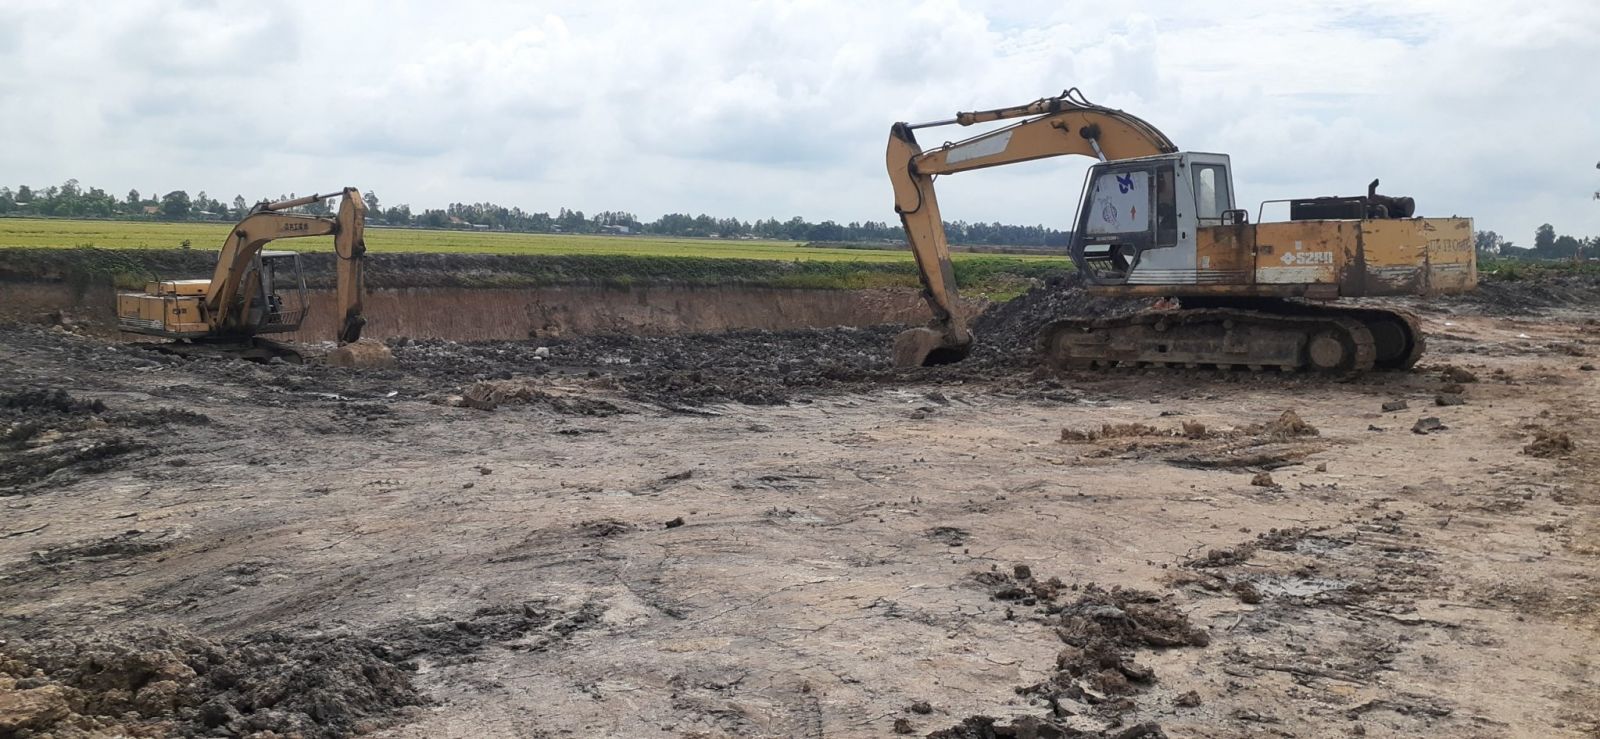  Tình trạng khai thác đất trái phép trên đất lúa xảy ra ở nhiều xã của huyện